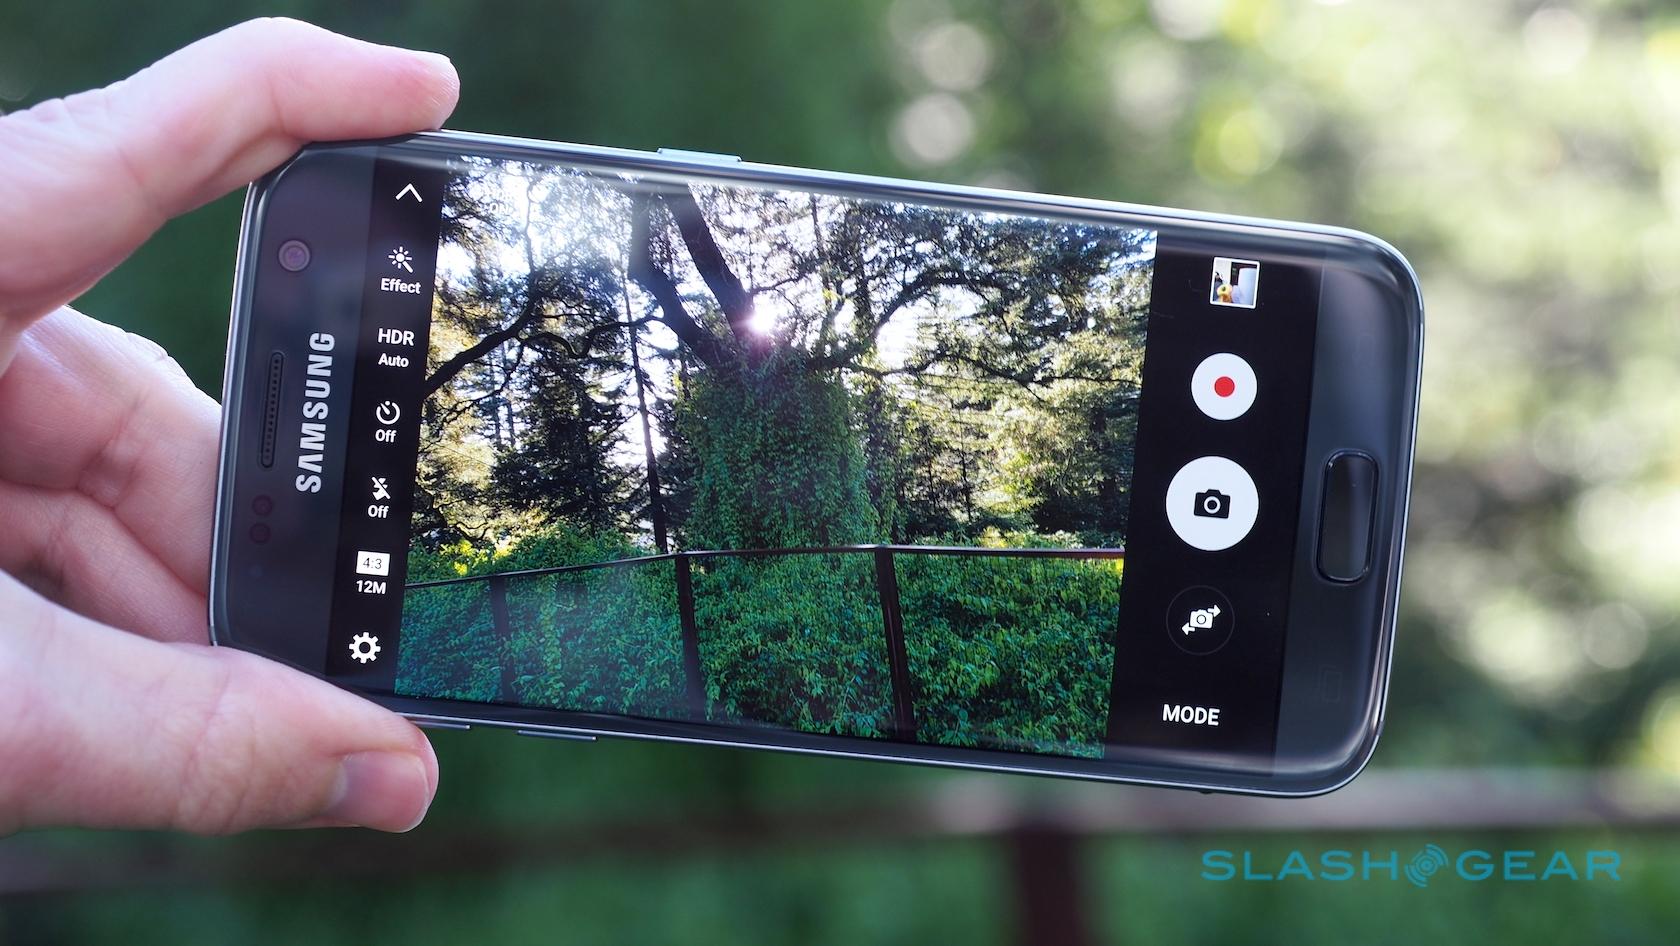 Verborgen mist verlichten Samsung Galaxy S7 and S7 edge Camera Samples - SlashGear